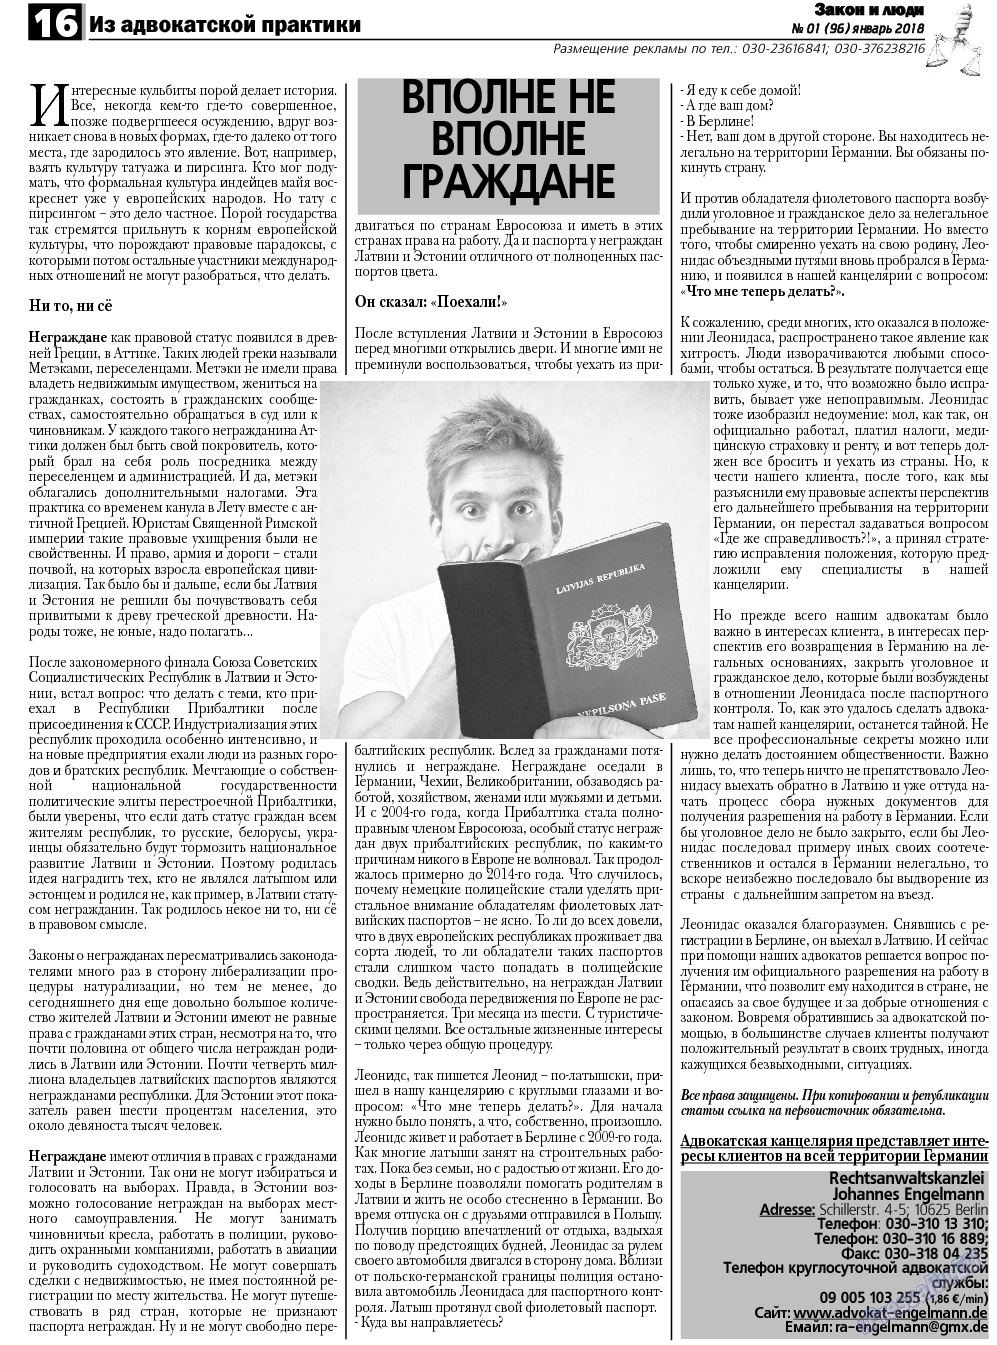 Закон и люди, газета. 2018 №1 стр.16